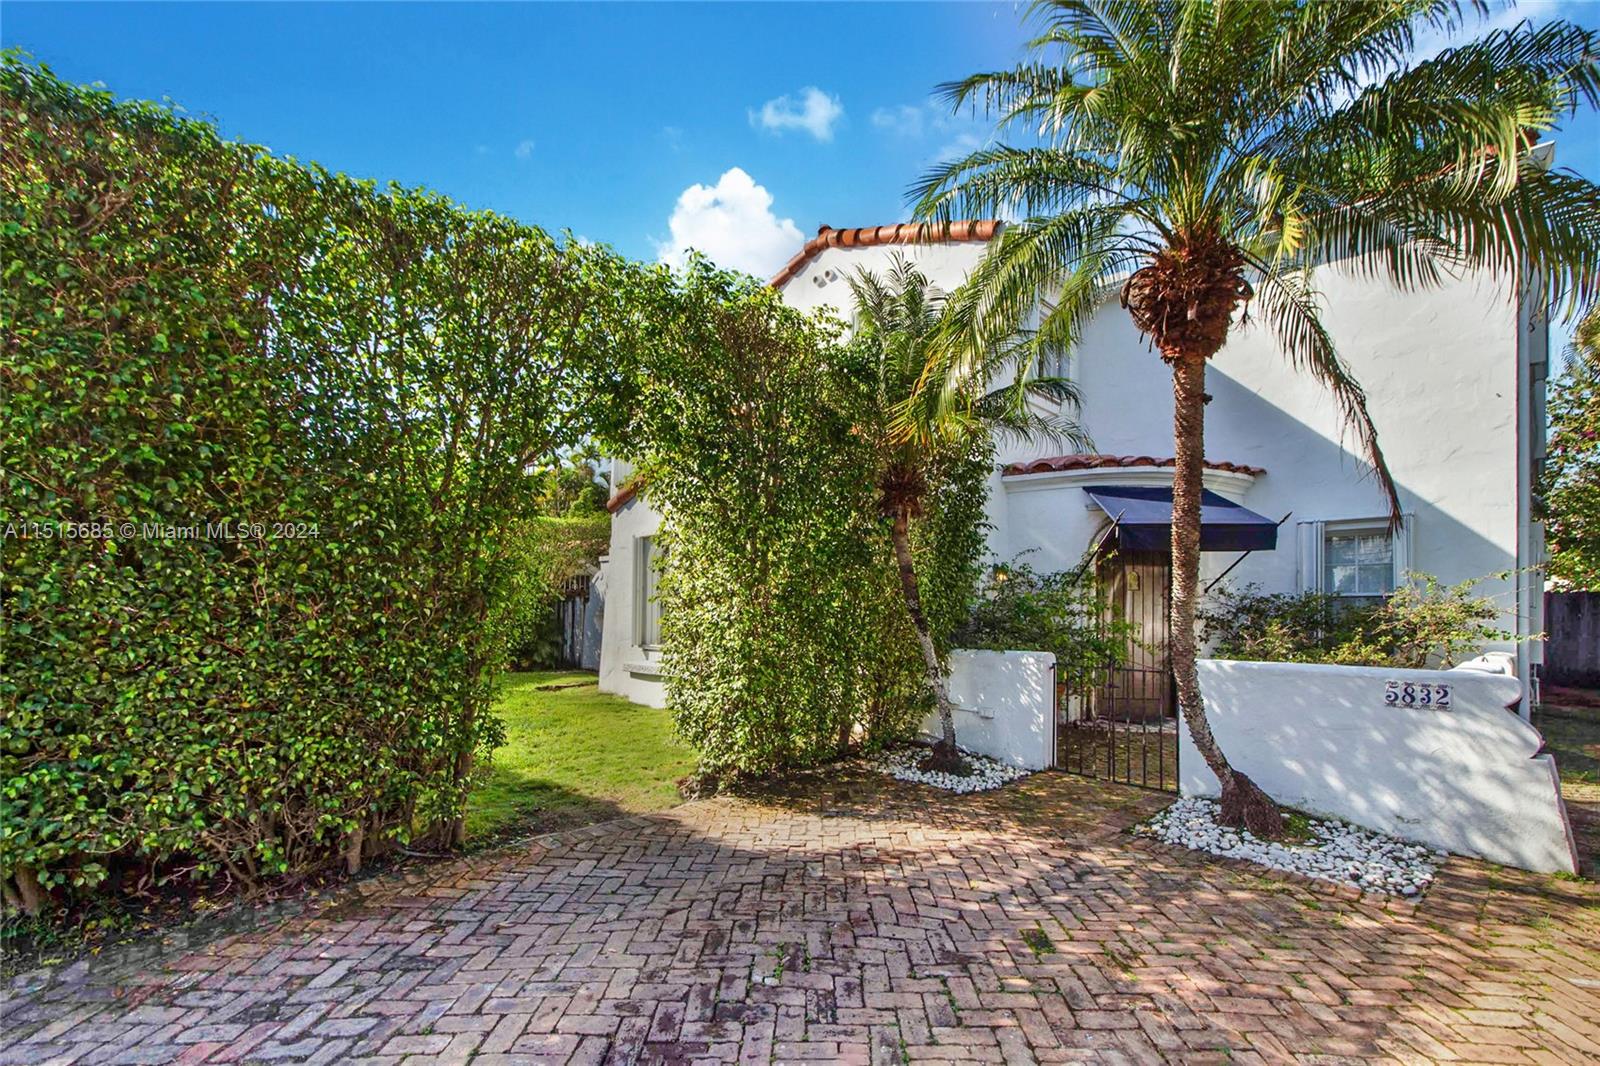 Rental Property at 5832 Alton Rd, Miami Beach, Miami-Dade County, Florida - Bedrooms: 4 
Bathrooms: 5  - $12,000 MO.